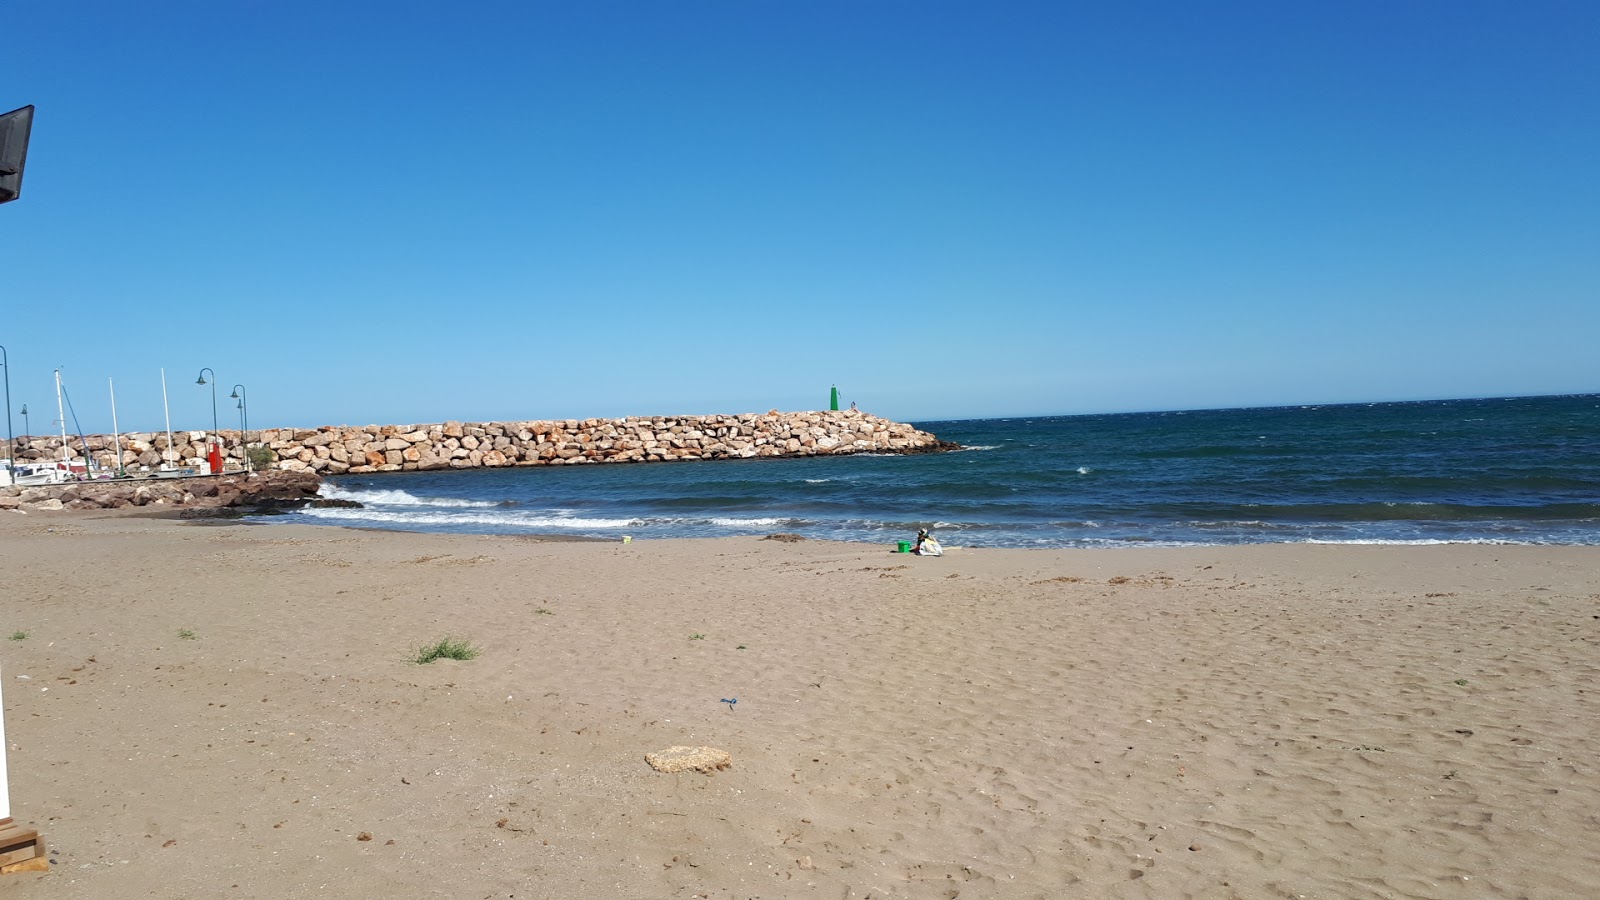 Playa de Luis Siret'in fotoğrafı küçük koy ile birlikte